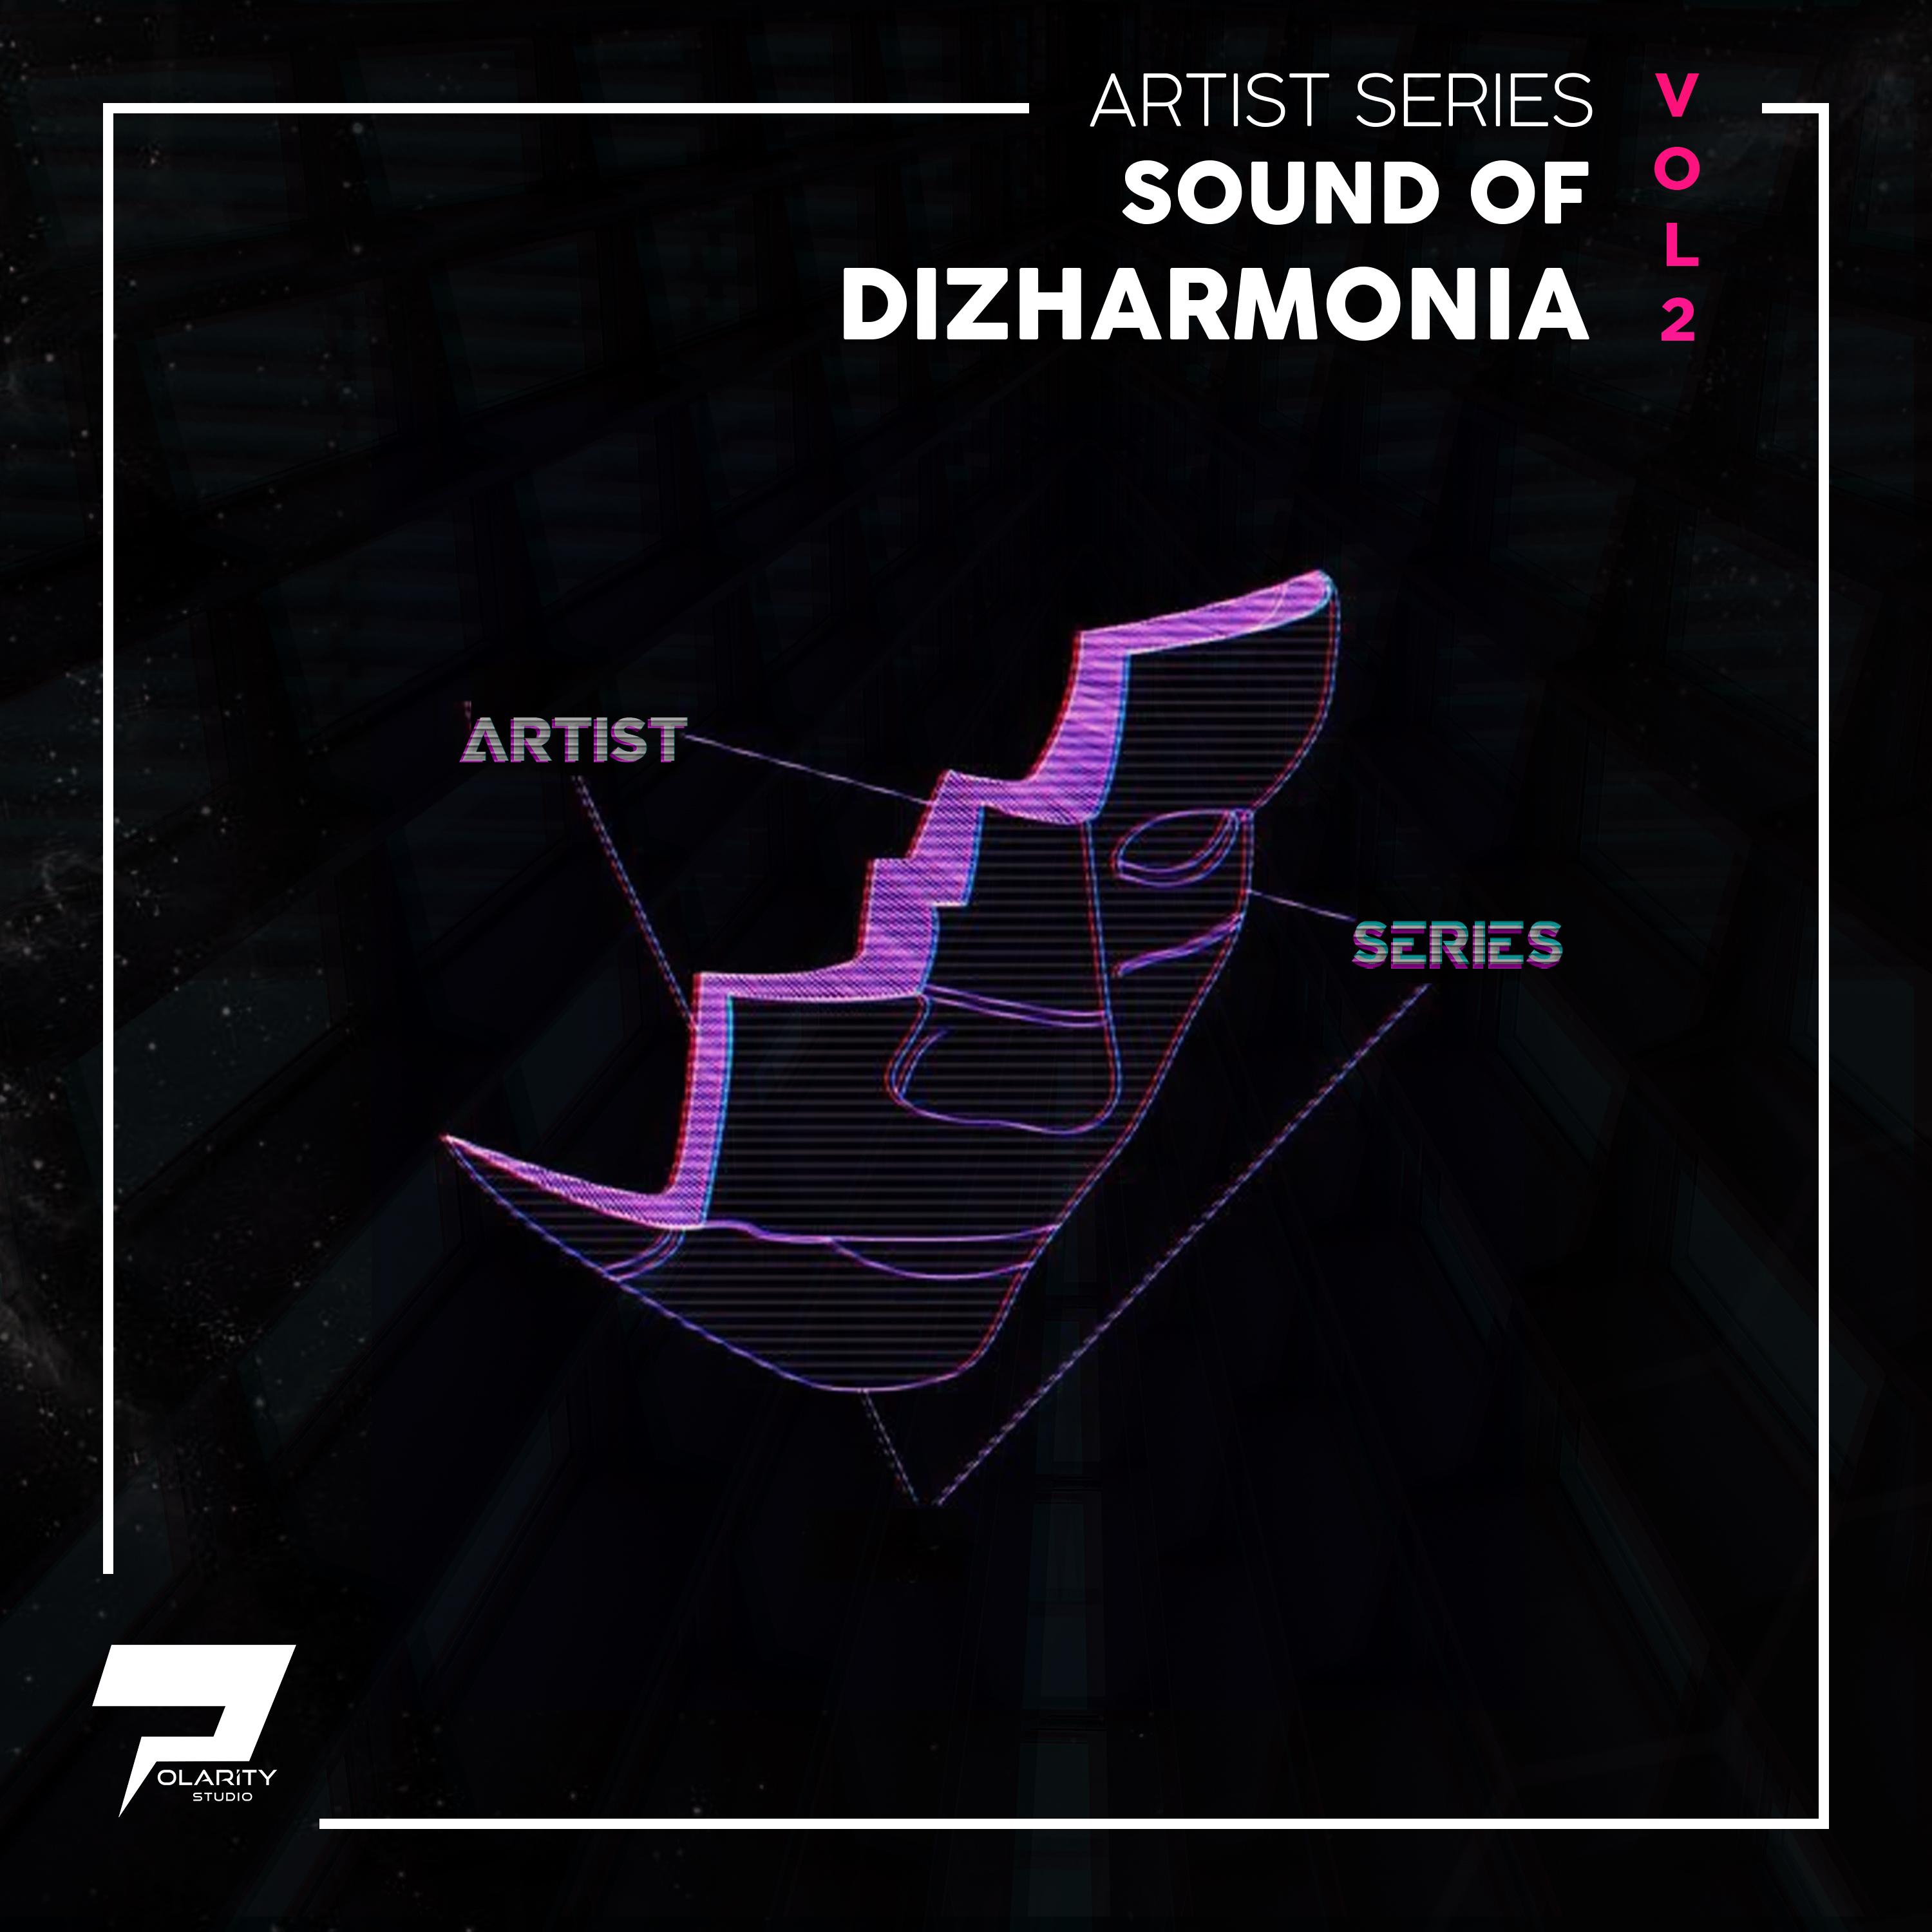 Polarity Studio - The Sounds Of Dizharmonia